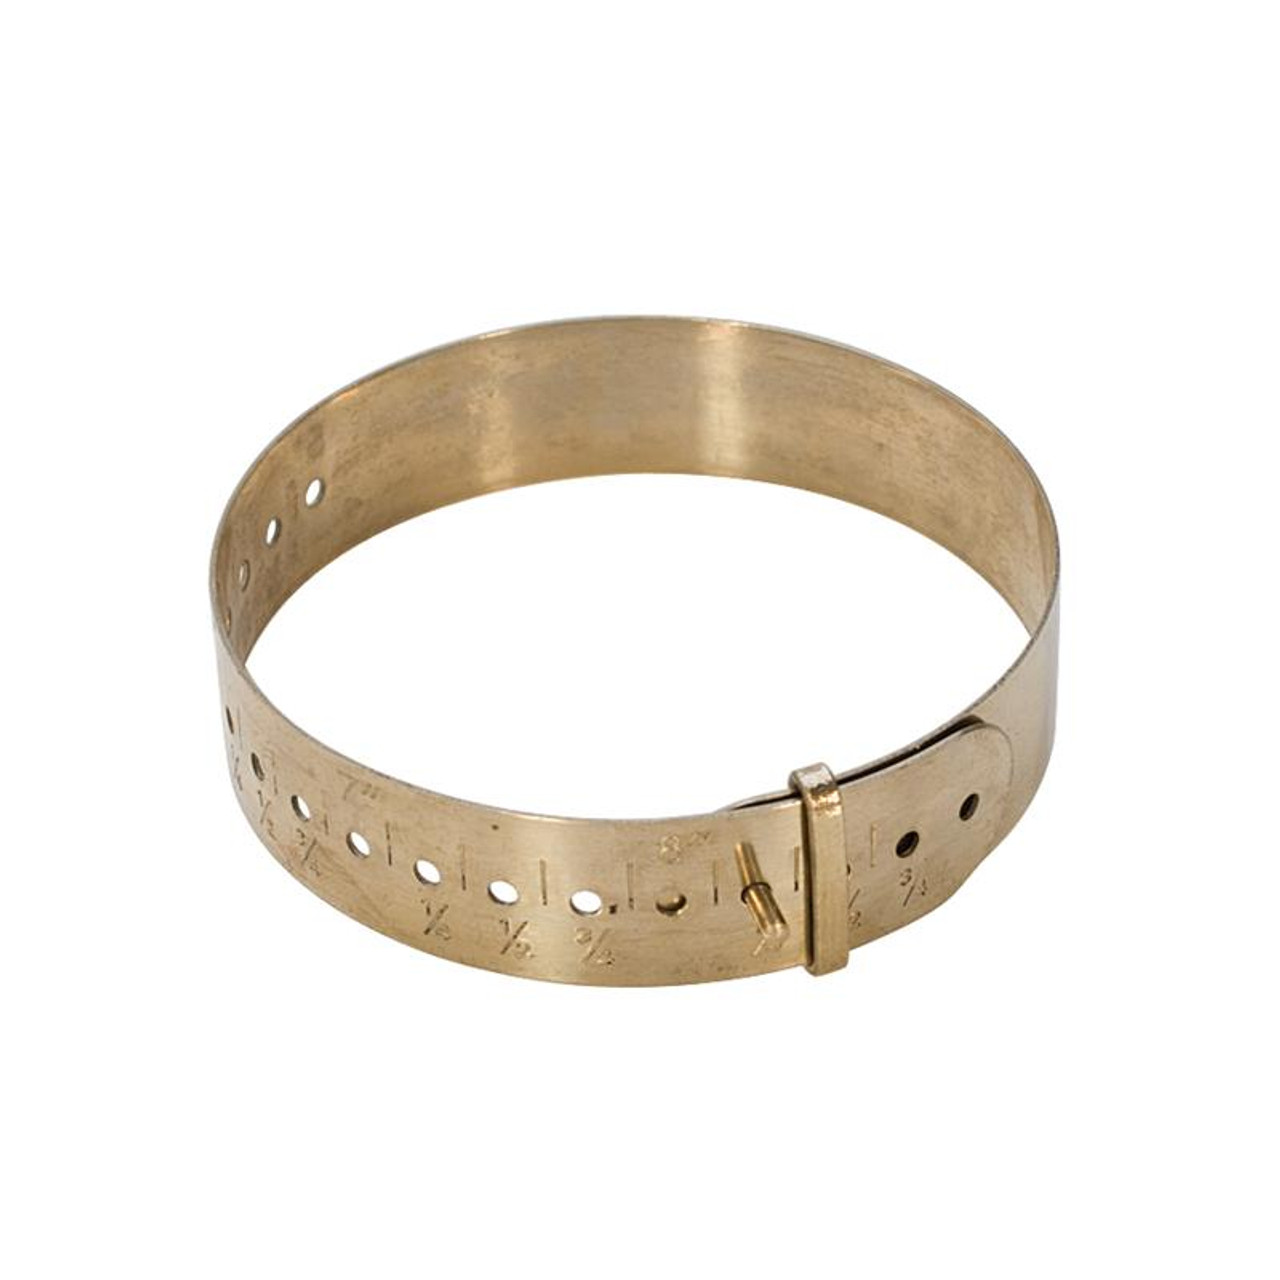 Brass bracelets and bangles